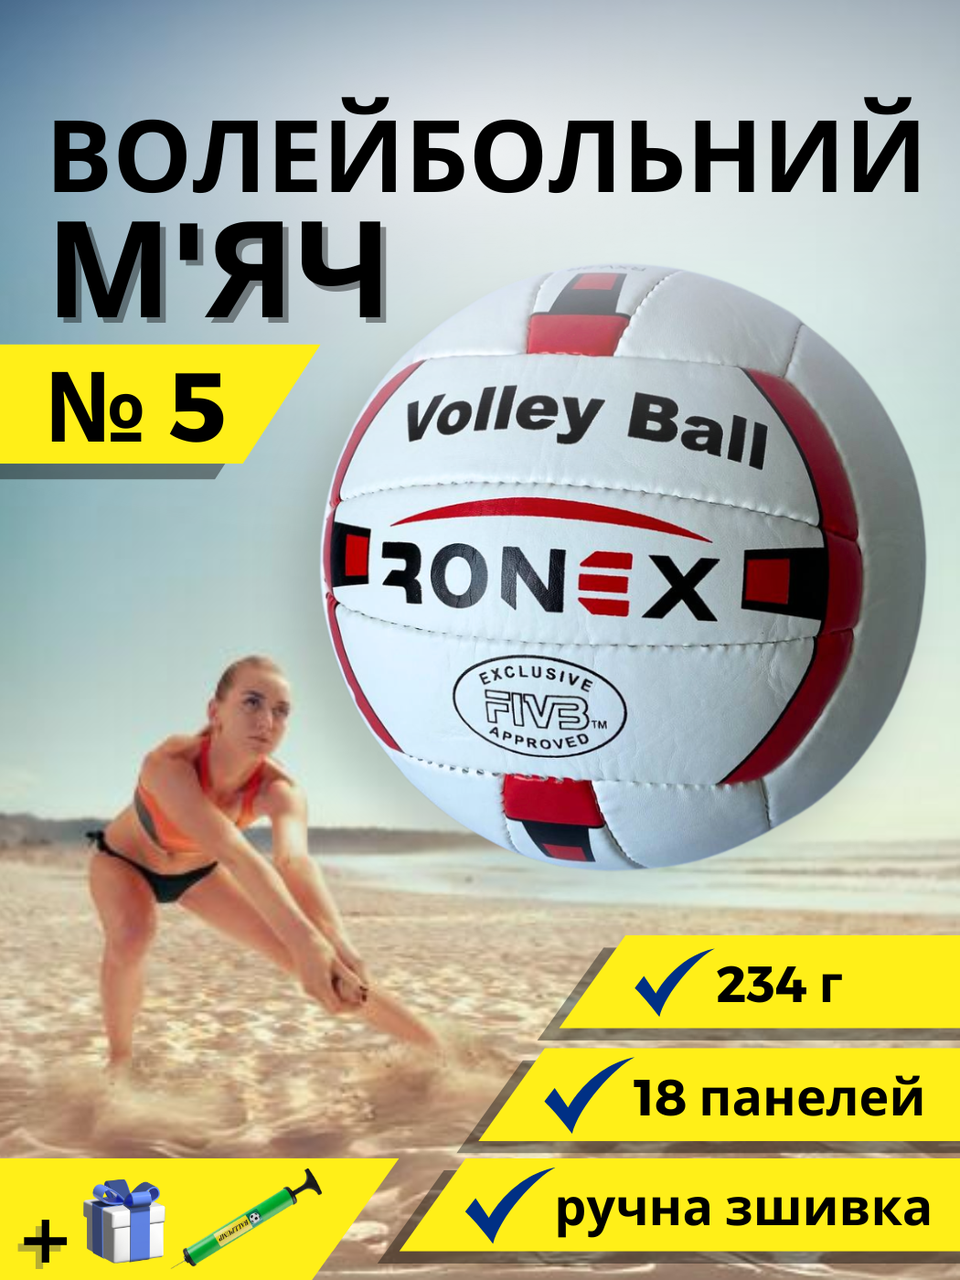 М'яч для волейболу, Ігровий волейбольний м'яч розмір 5 Ручна зшивка Ronex Біло-червоний (2R)